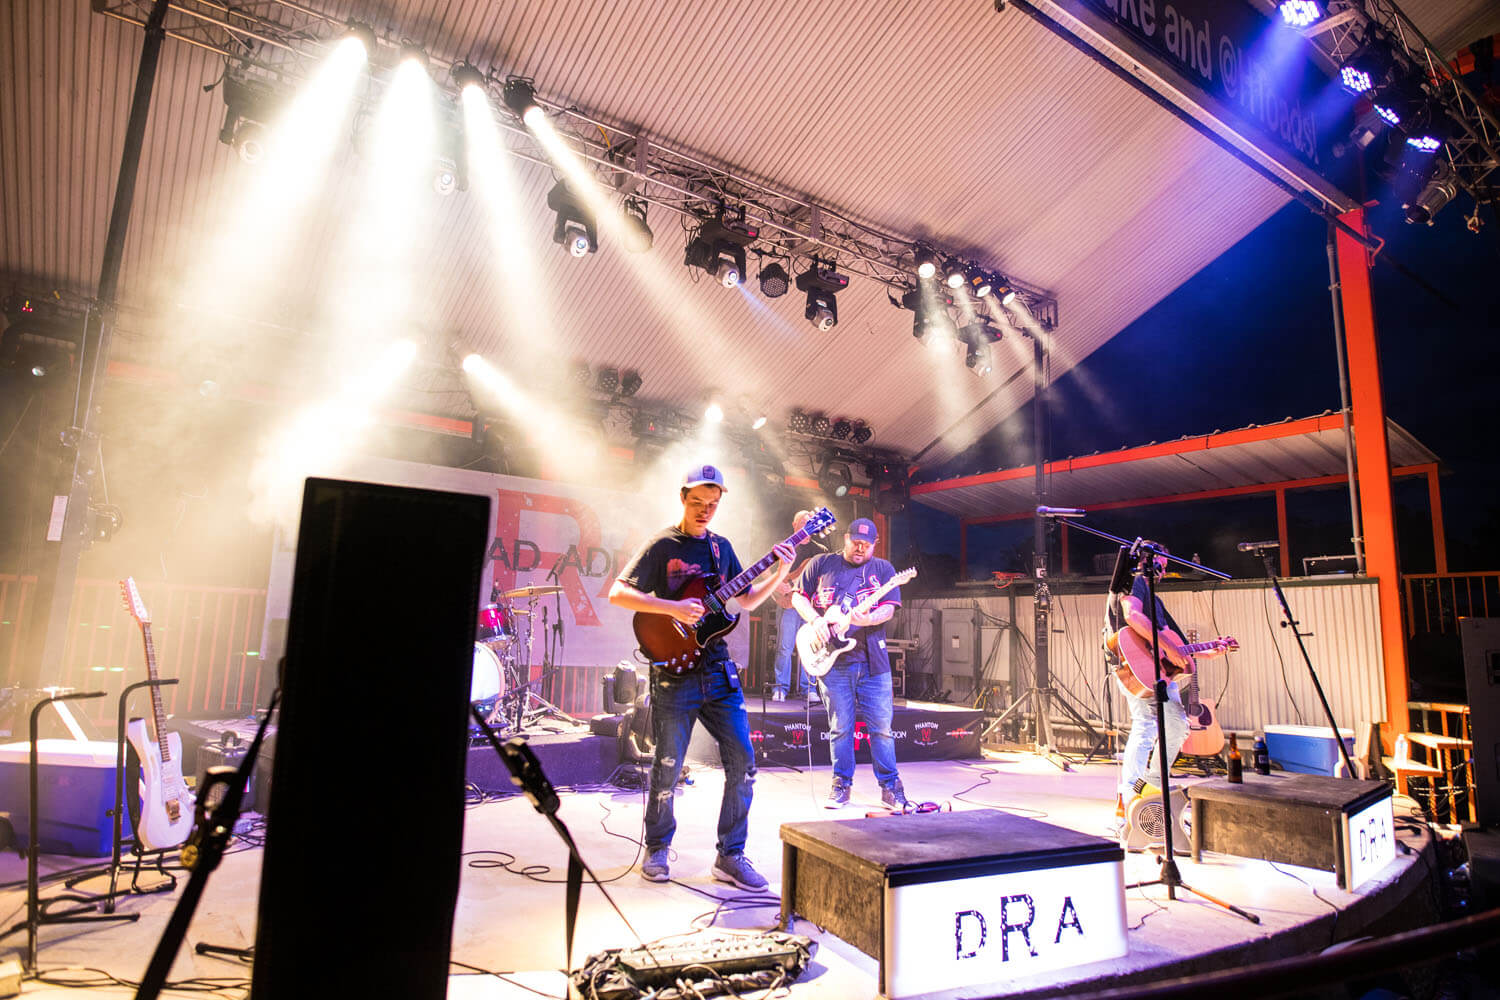 DRA Band performing